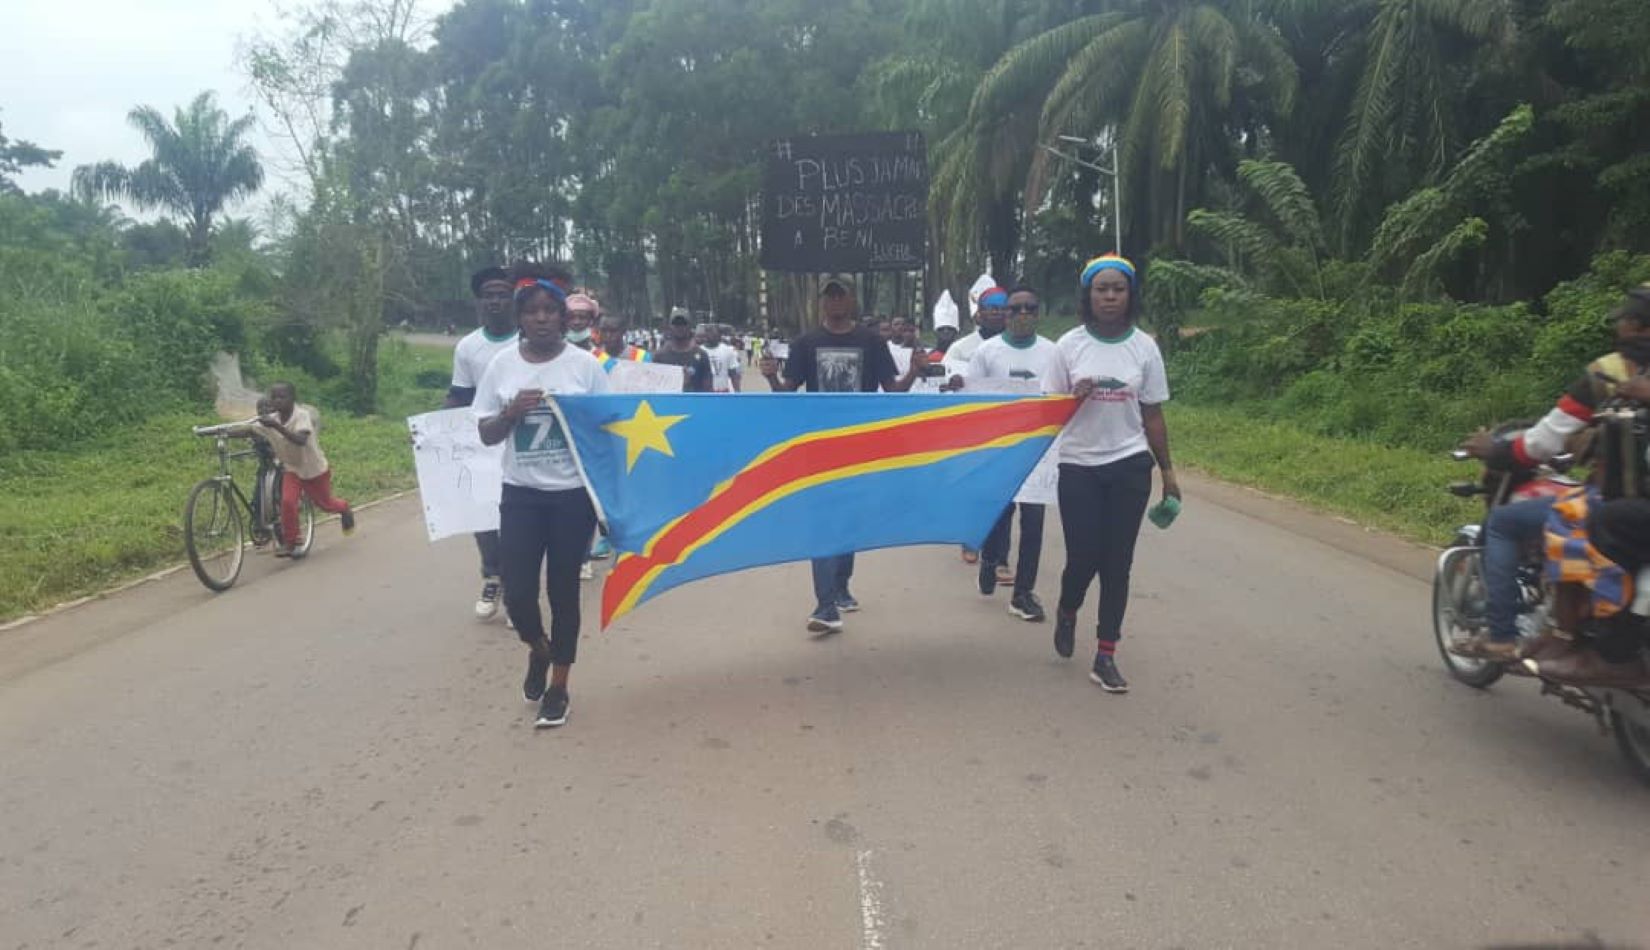 RDC: les élèves poursuivent leur sit-in à Beni pour exiger le départ de la mission onusienne en RDC, la Monusco